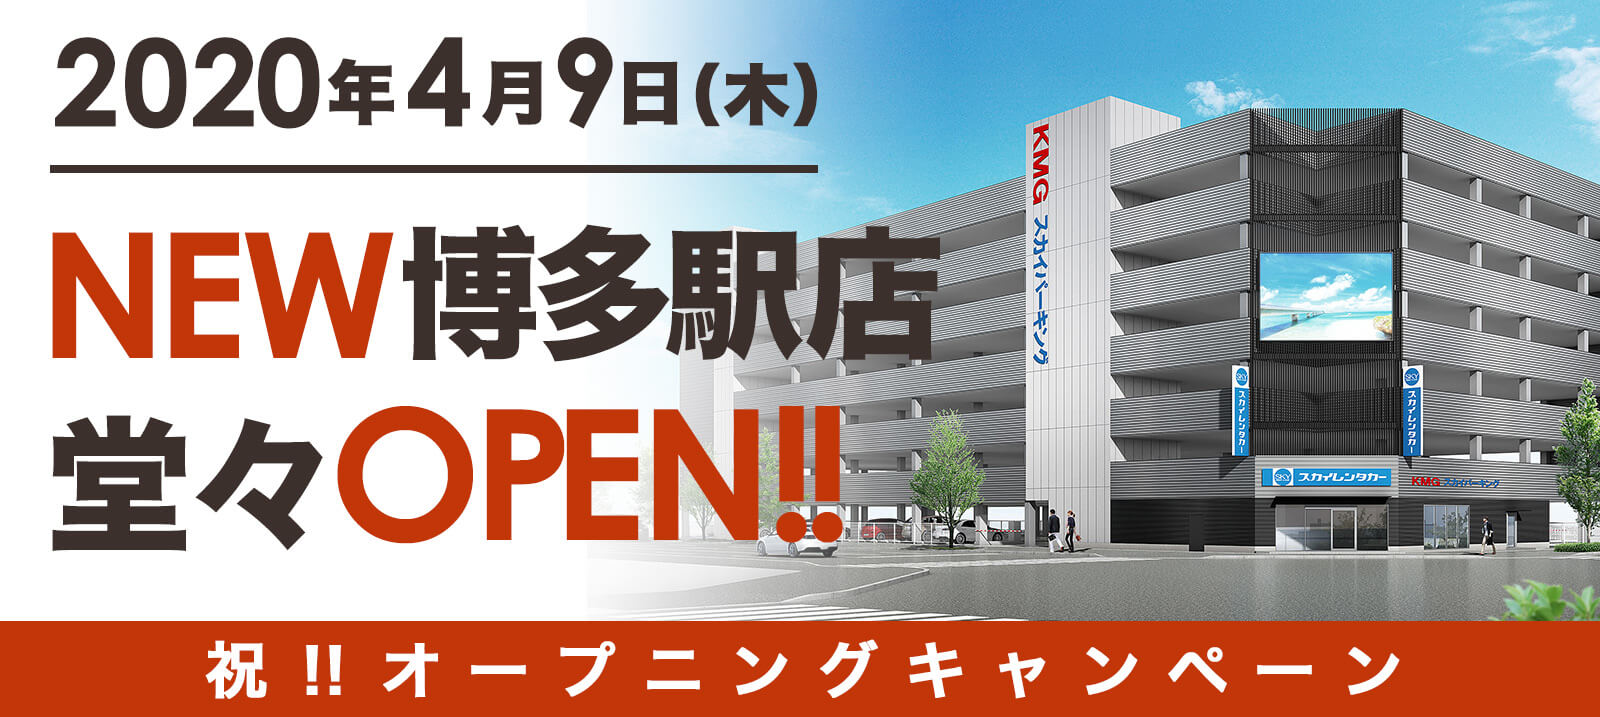 2020年4月9日(木) NEW博多駅店 堂々OPEN!! 祝オープニングキャンペーン